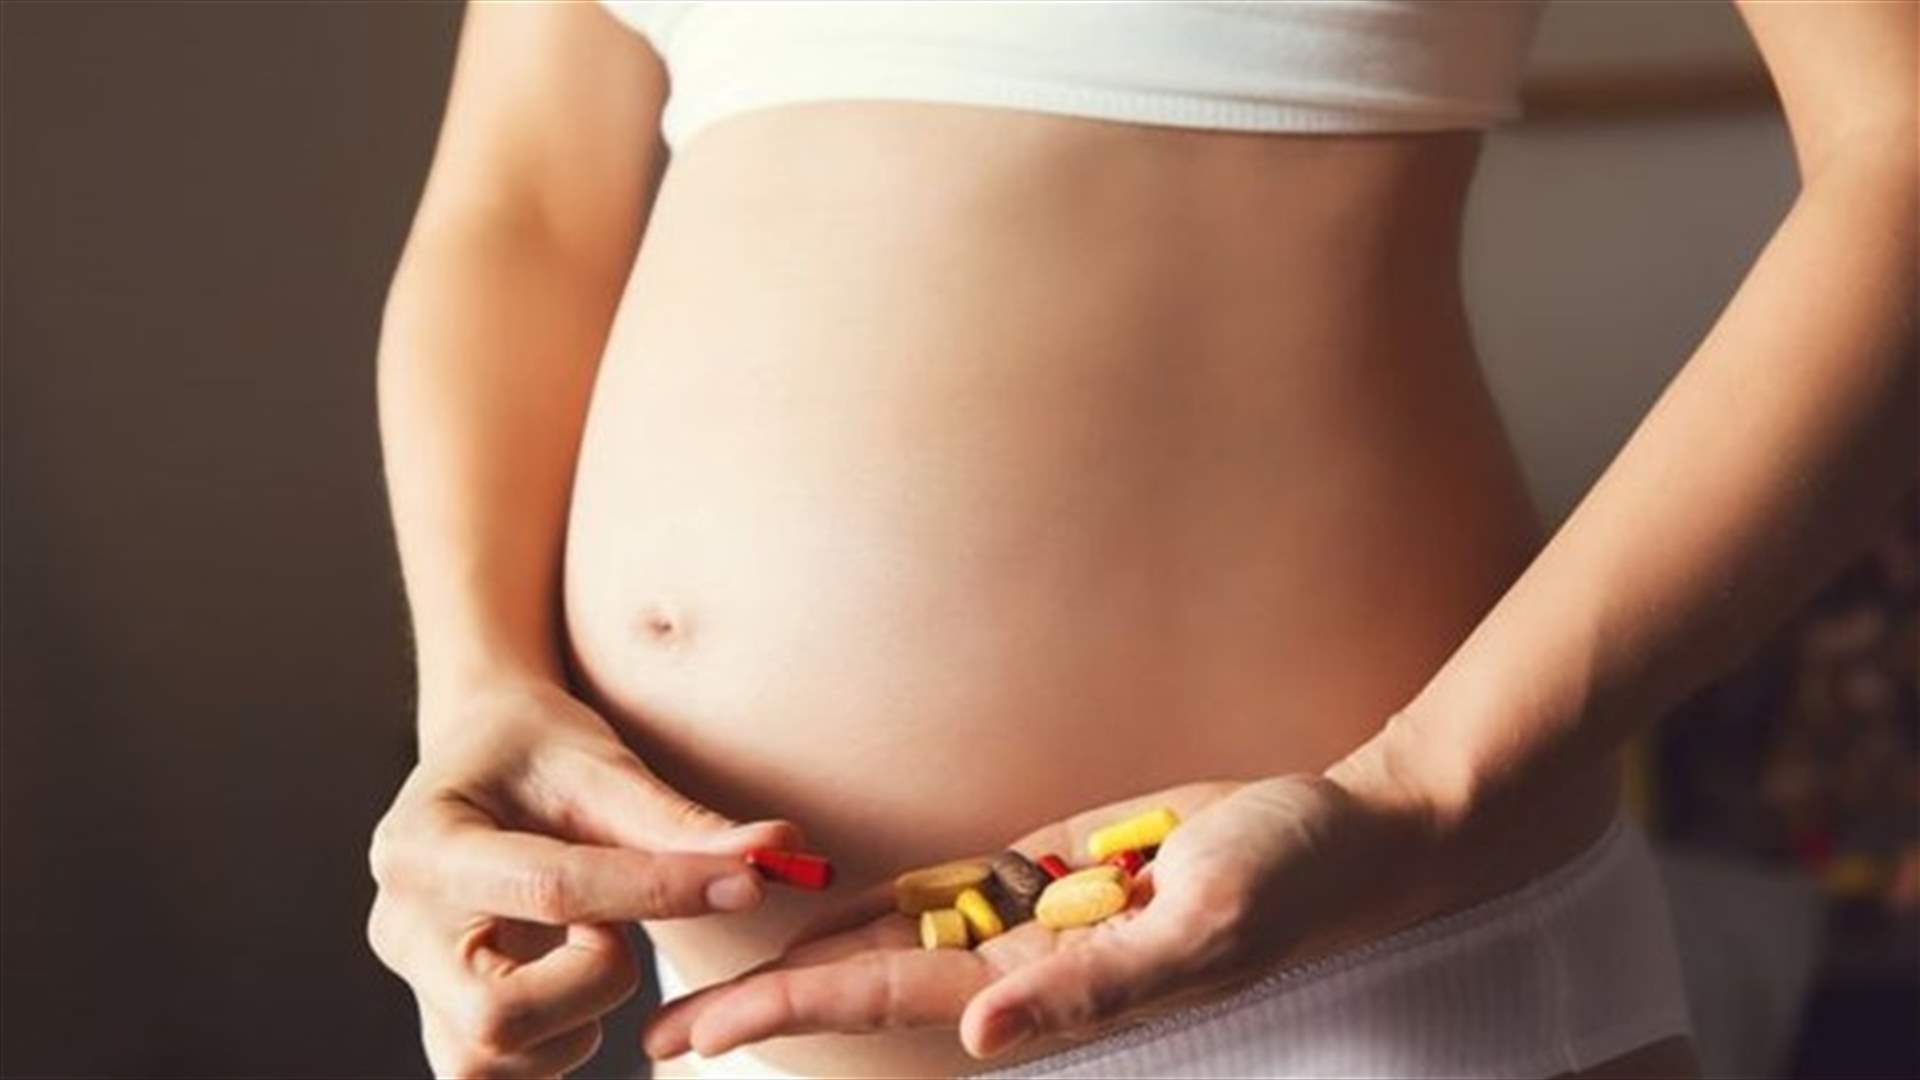 تناول هذا الفيتامين يمنع الإجهاض والعيوب الخلقية لدى الجنين!